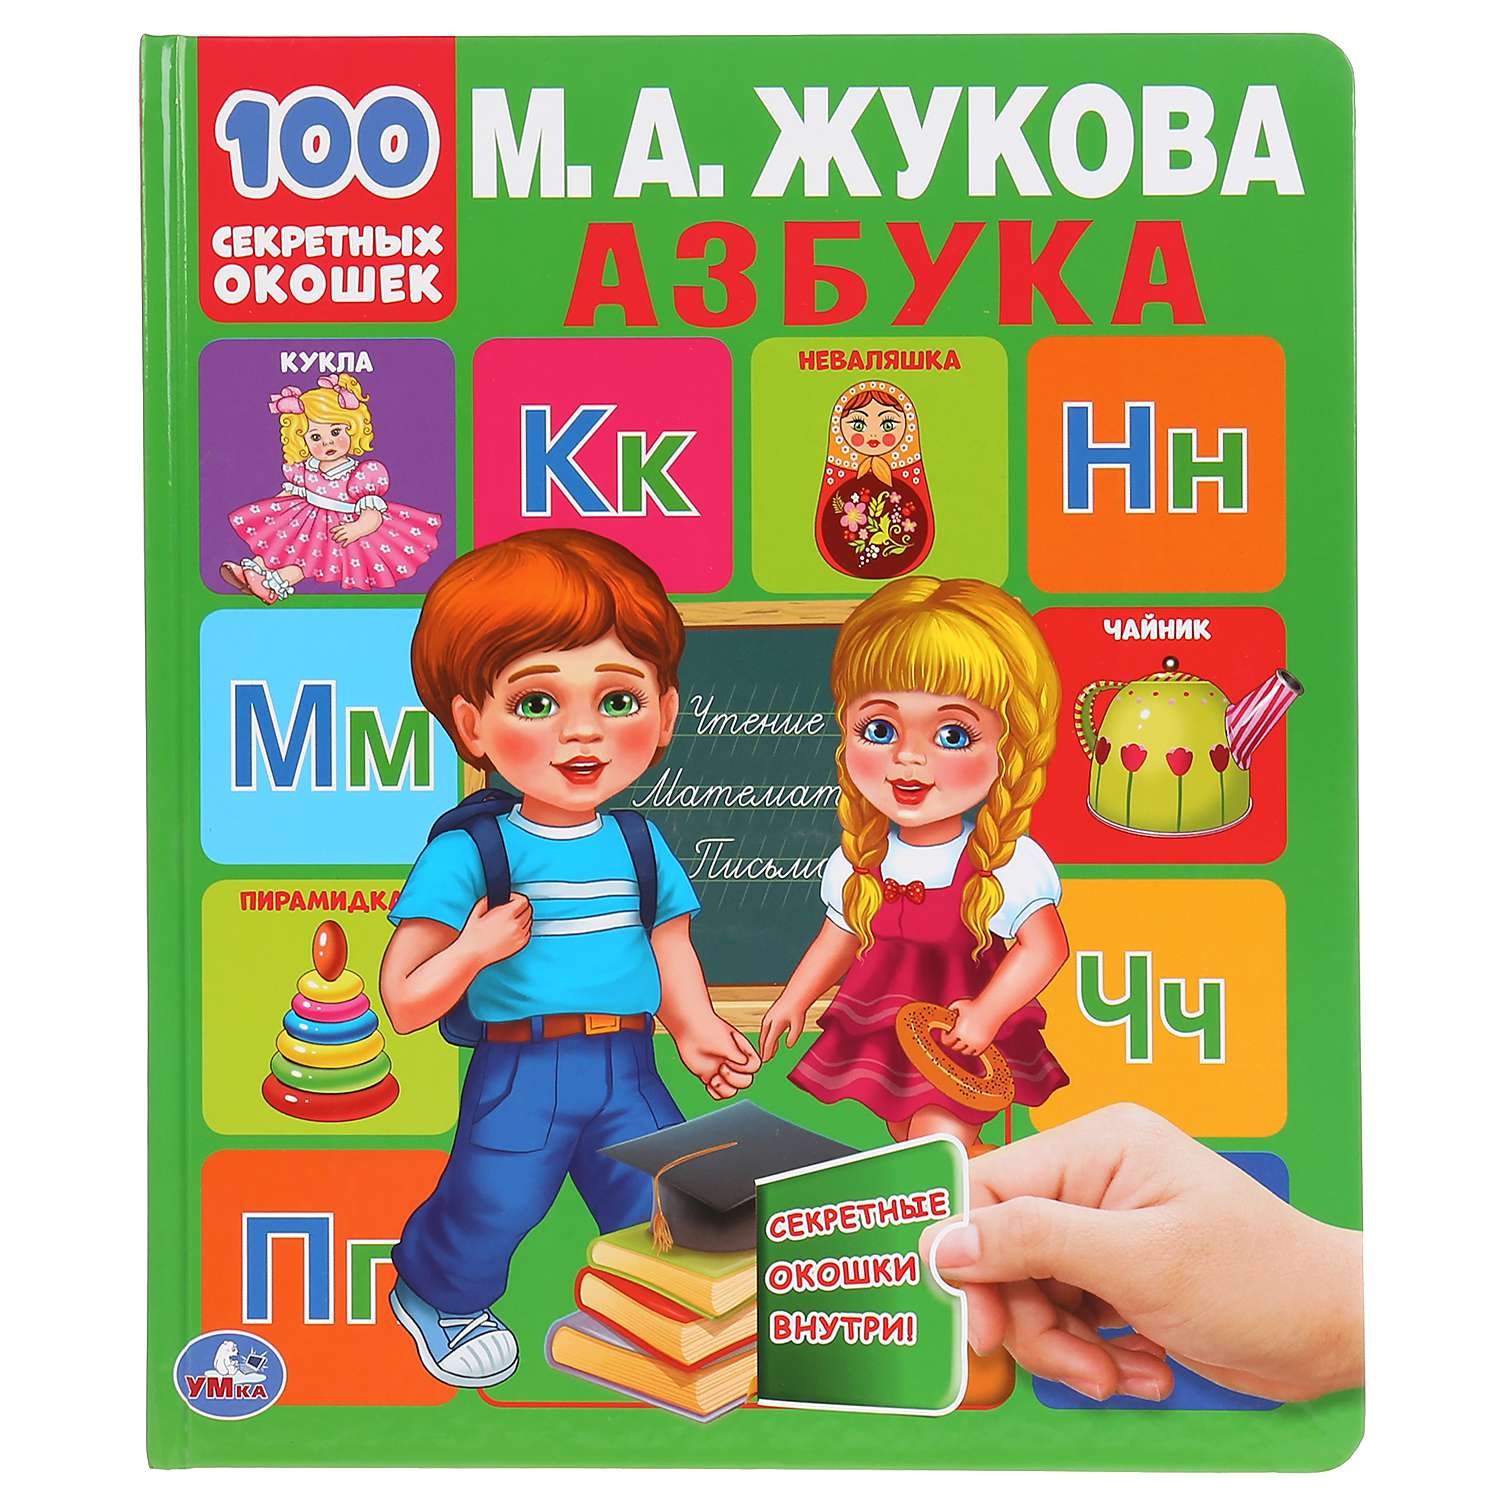 Книга УМка Азбука 100 секретных окошек Жукова 294557 - фото 1